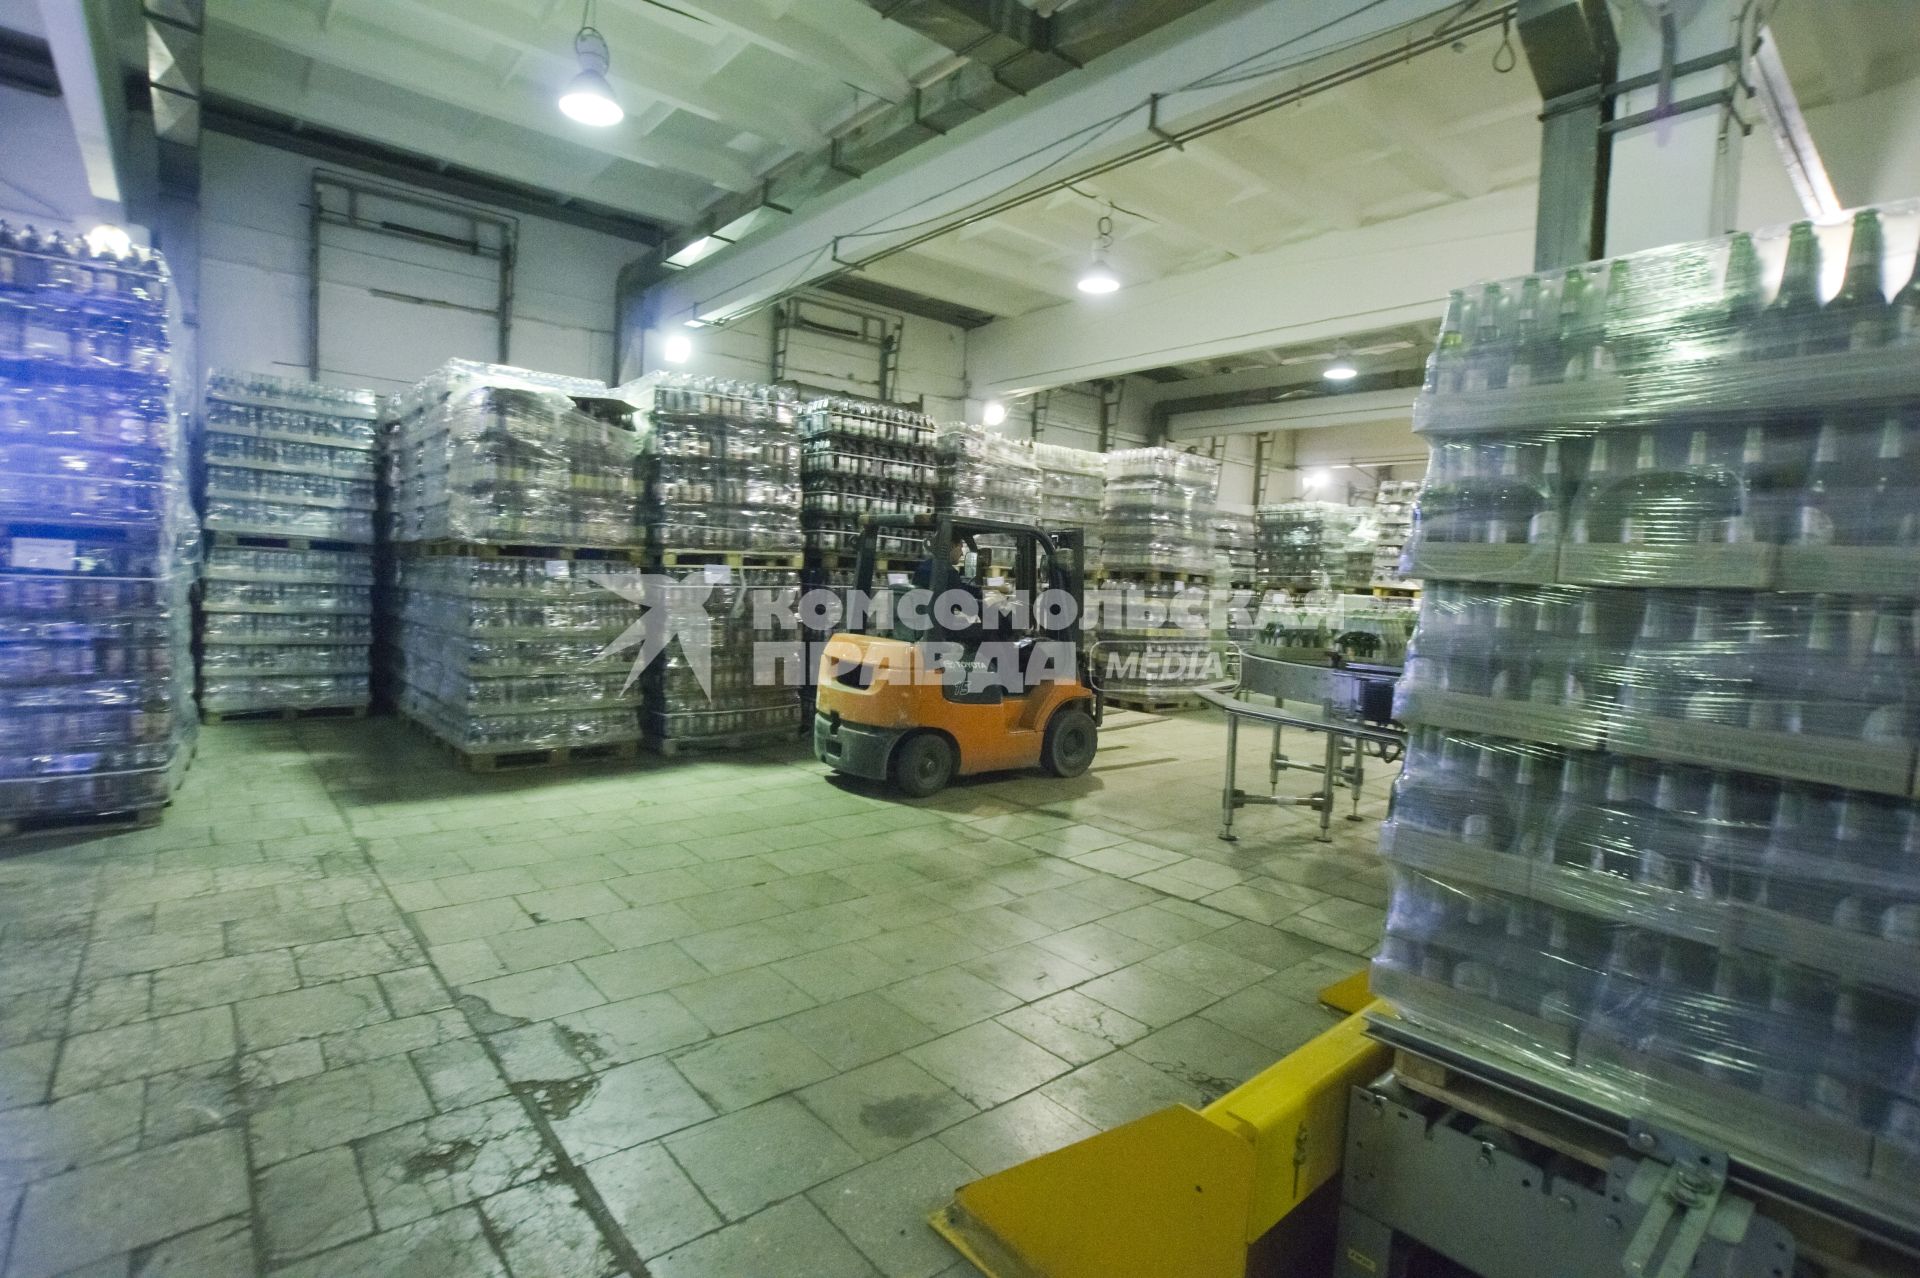 Бутылки с пивом на складе готовой продукции. Нижне-Тагильский пивной завод